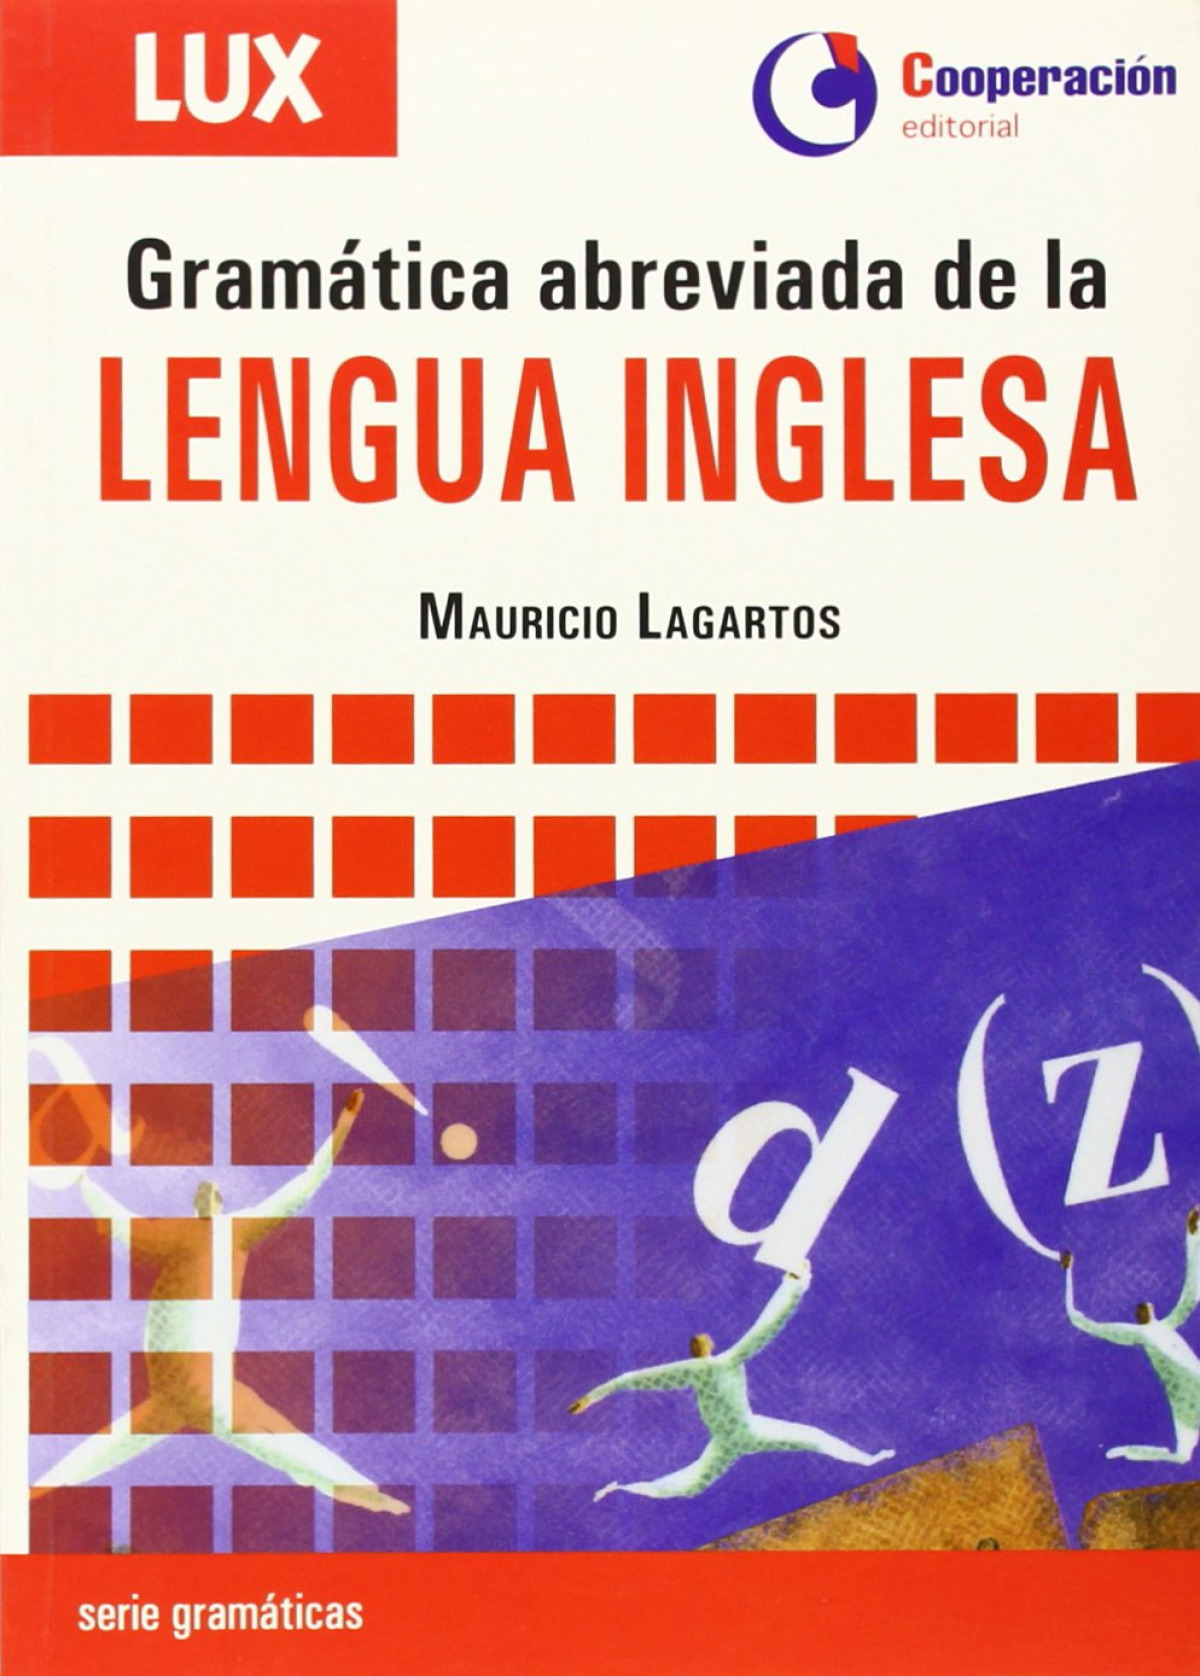 Gramatica abreviada de la Lengua Inglesa Mm - auricio Lagartos E